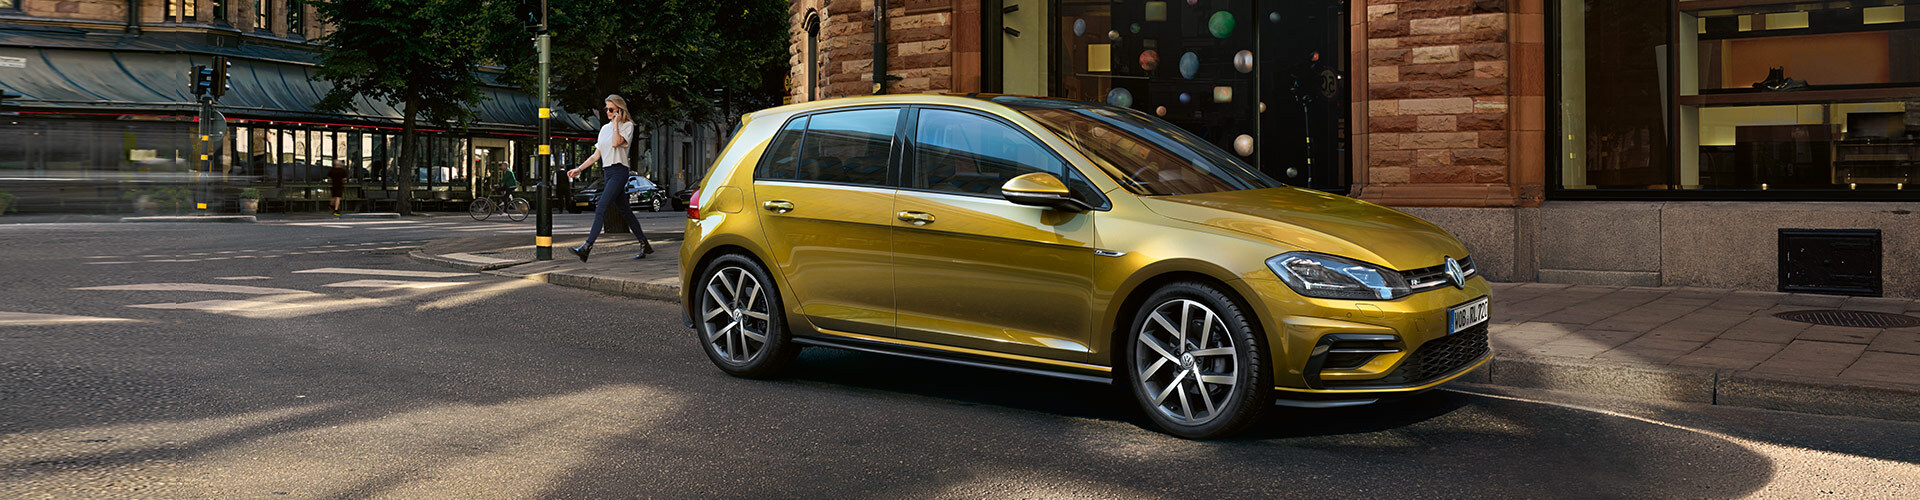 VW Golf in gold mit R-line paket